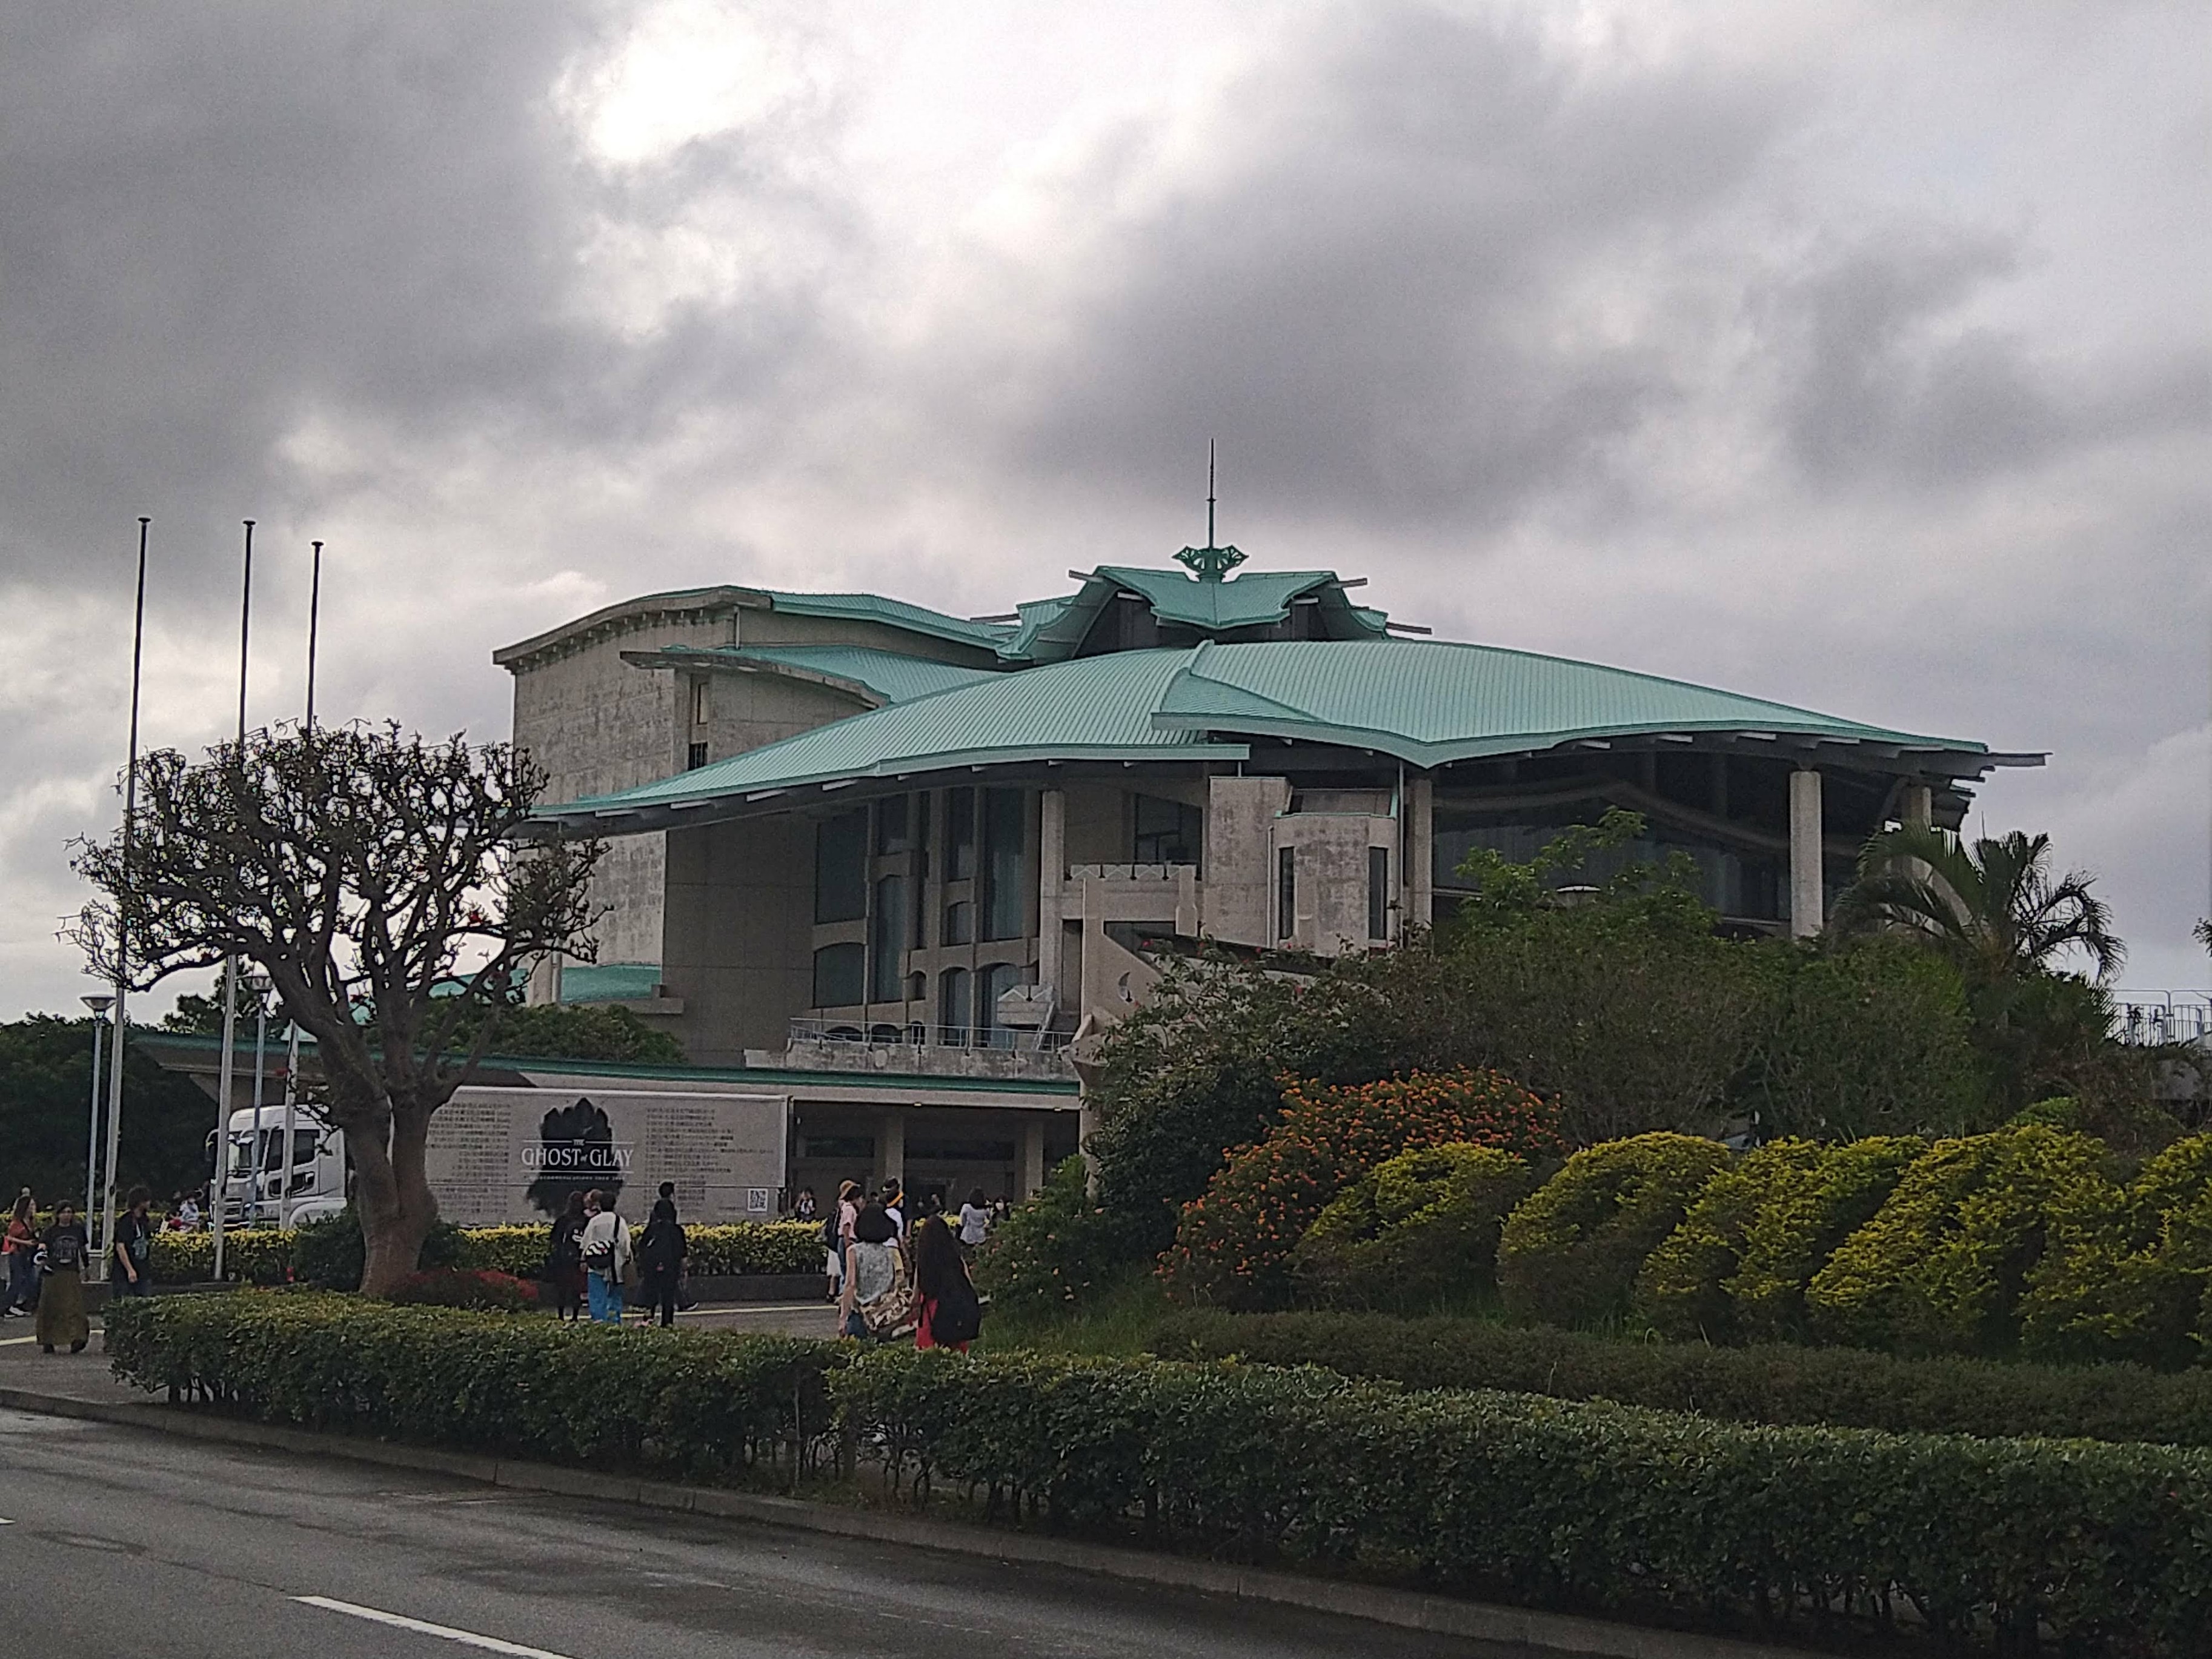 沖縄コンベンションセンター